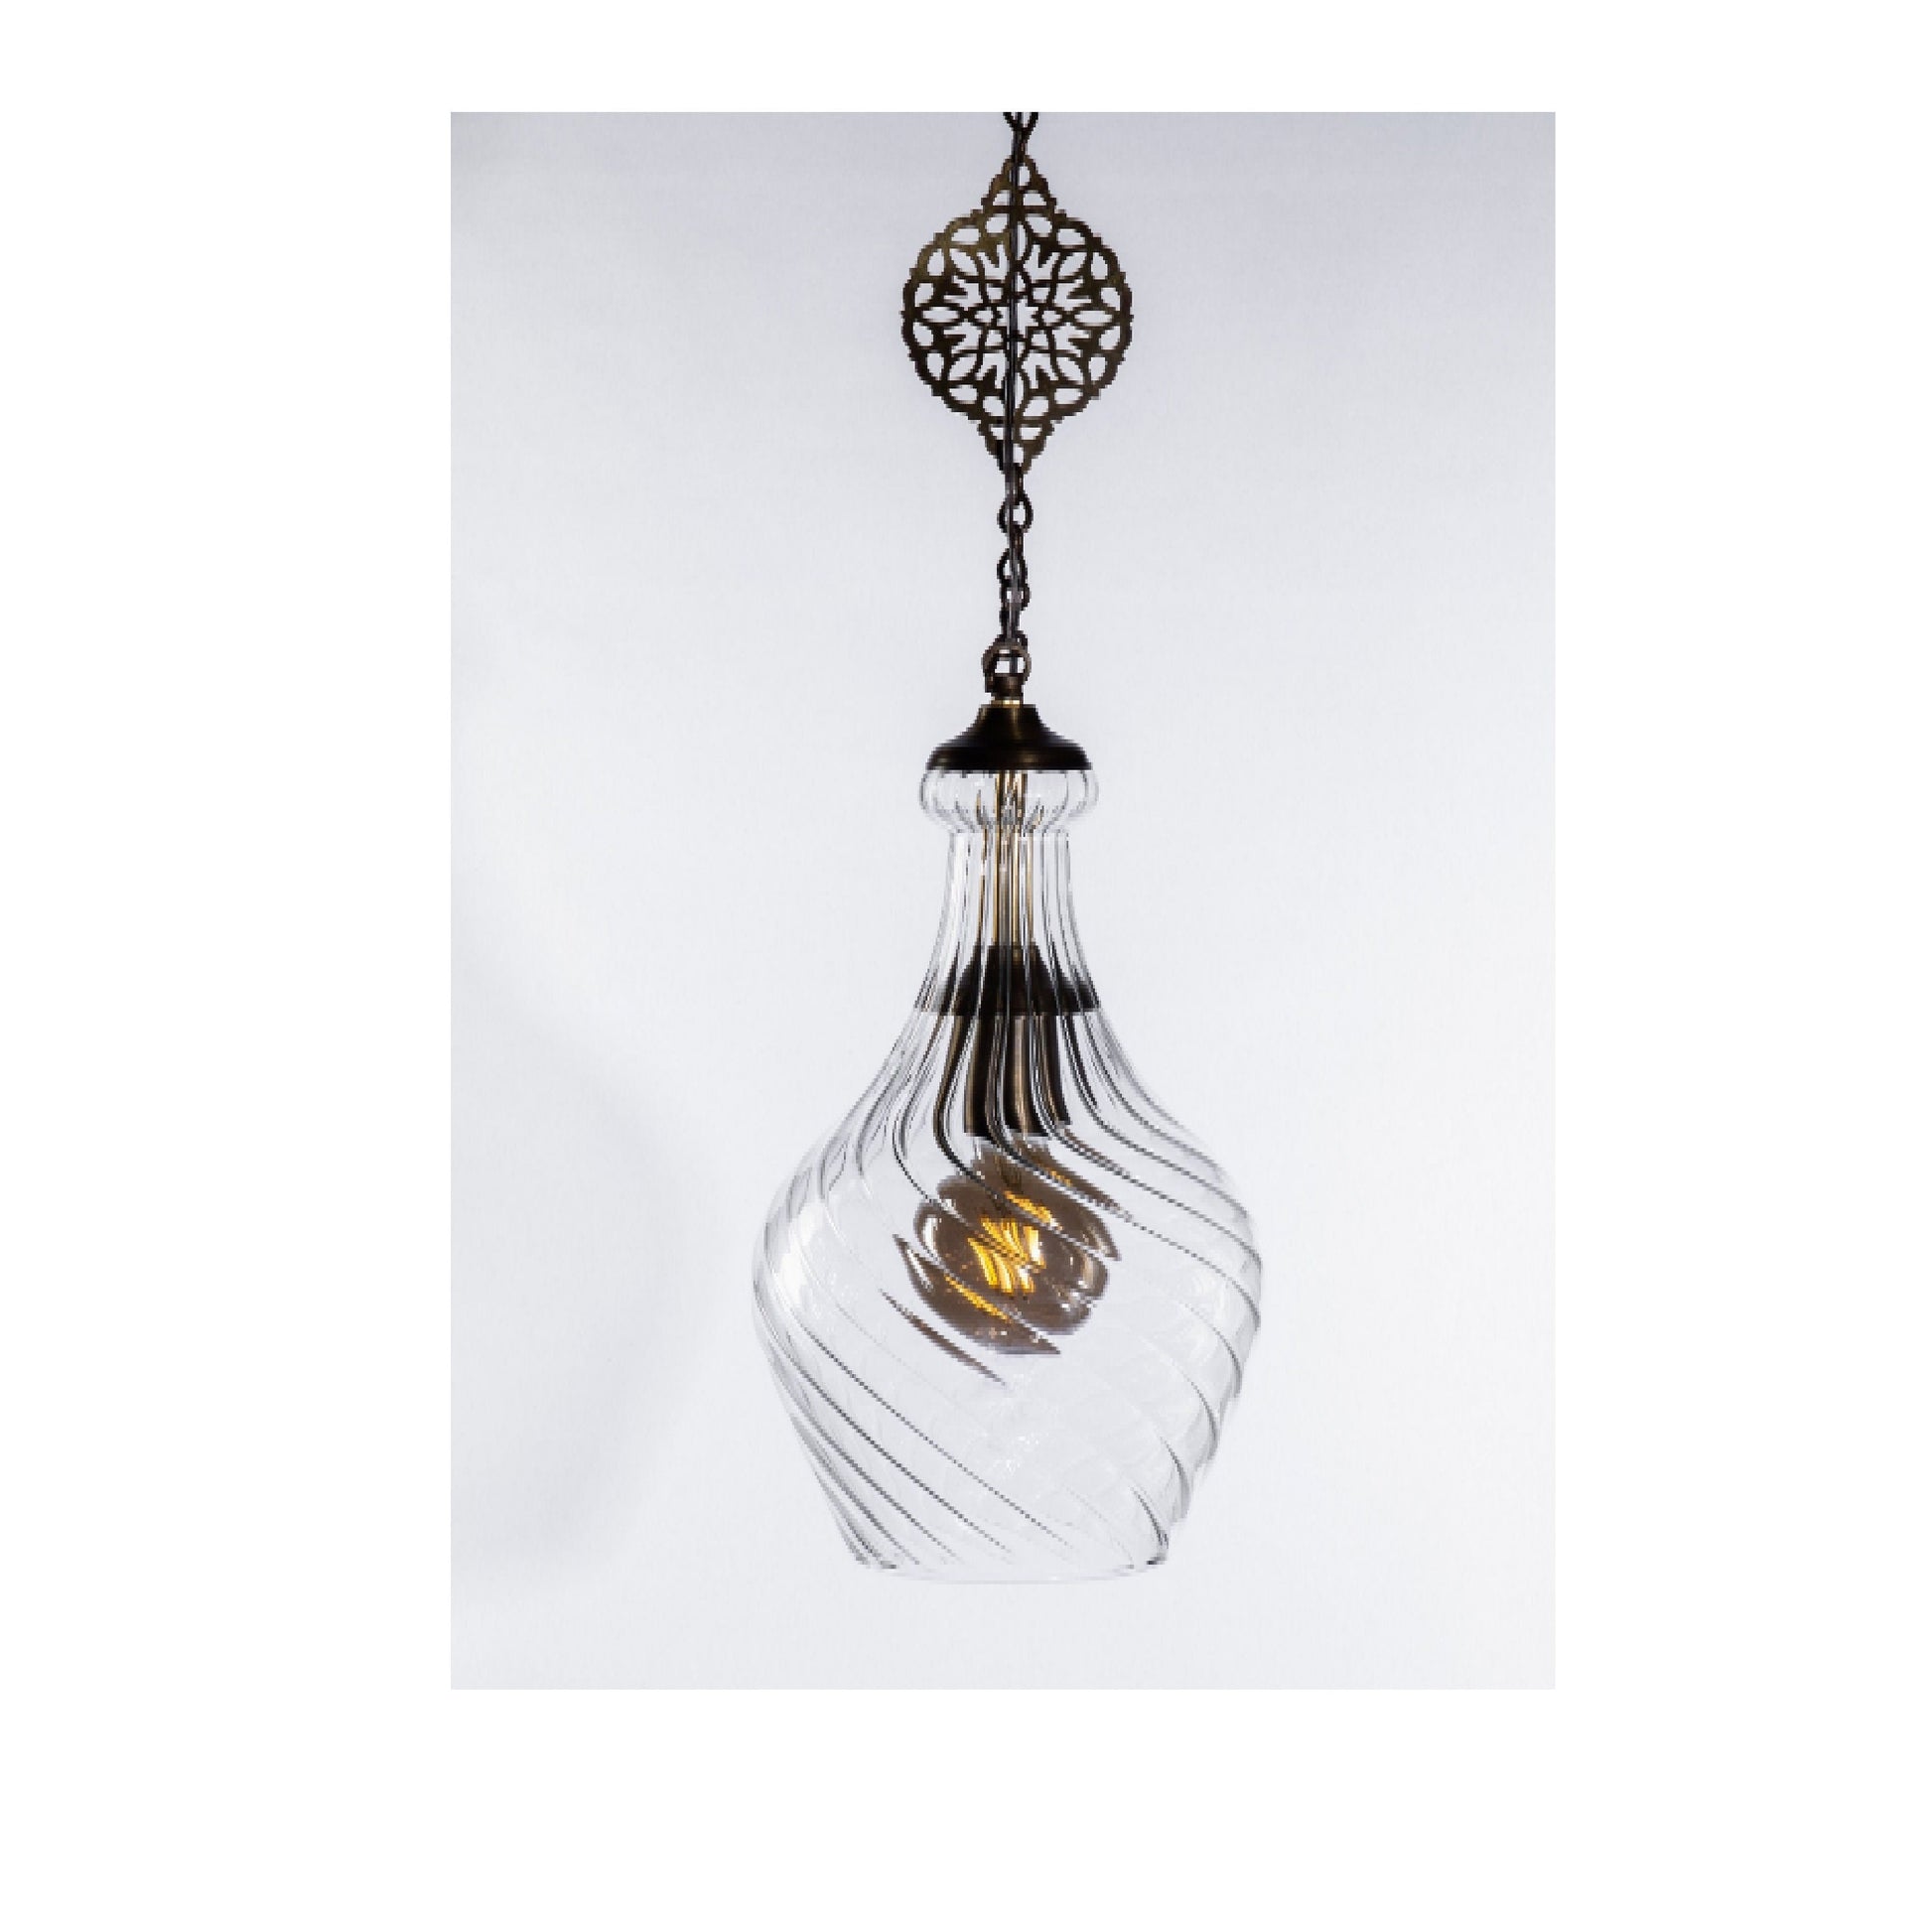 Blown Glass handmade pendant - Art glass light fixtures - Ceiling Light Fixture - Brass Ceiling Canopy pendant light - Custom Pendant light